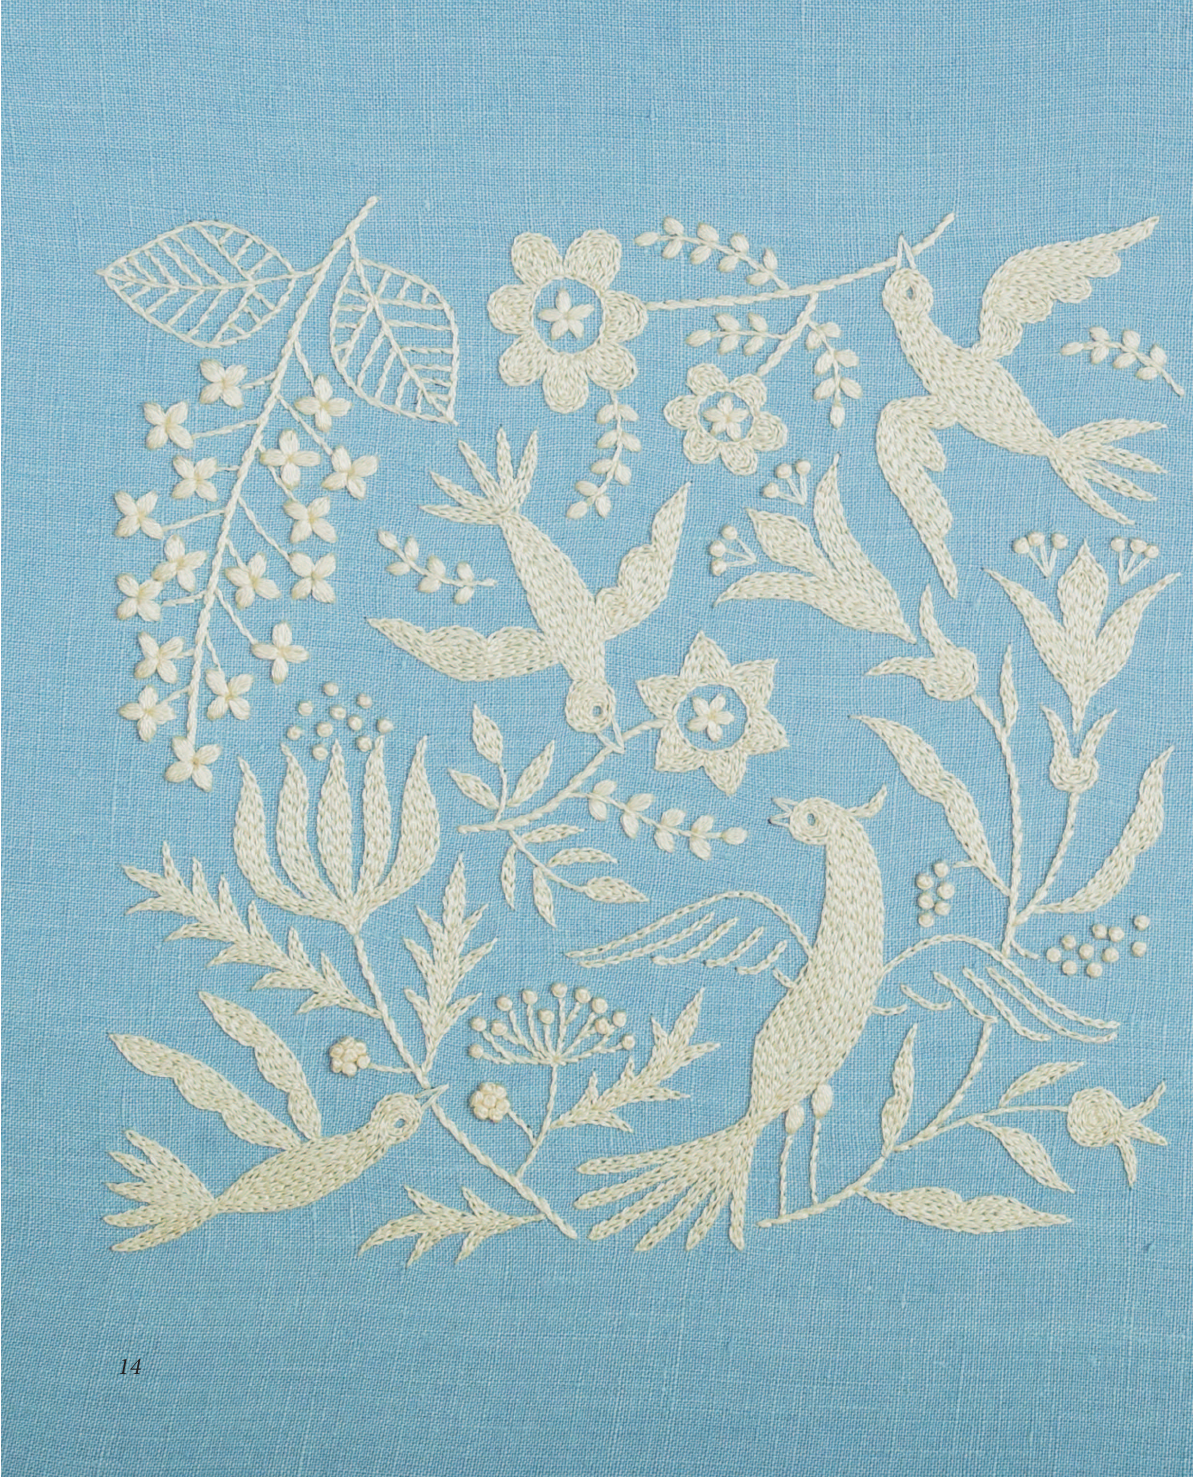 Вышивка Юмико Хигучи Анималистическая коллекция Простые и эффектные дизайны вышивки нитью мулине по льняной ткани 25 сюжетов с животными - фото №13